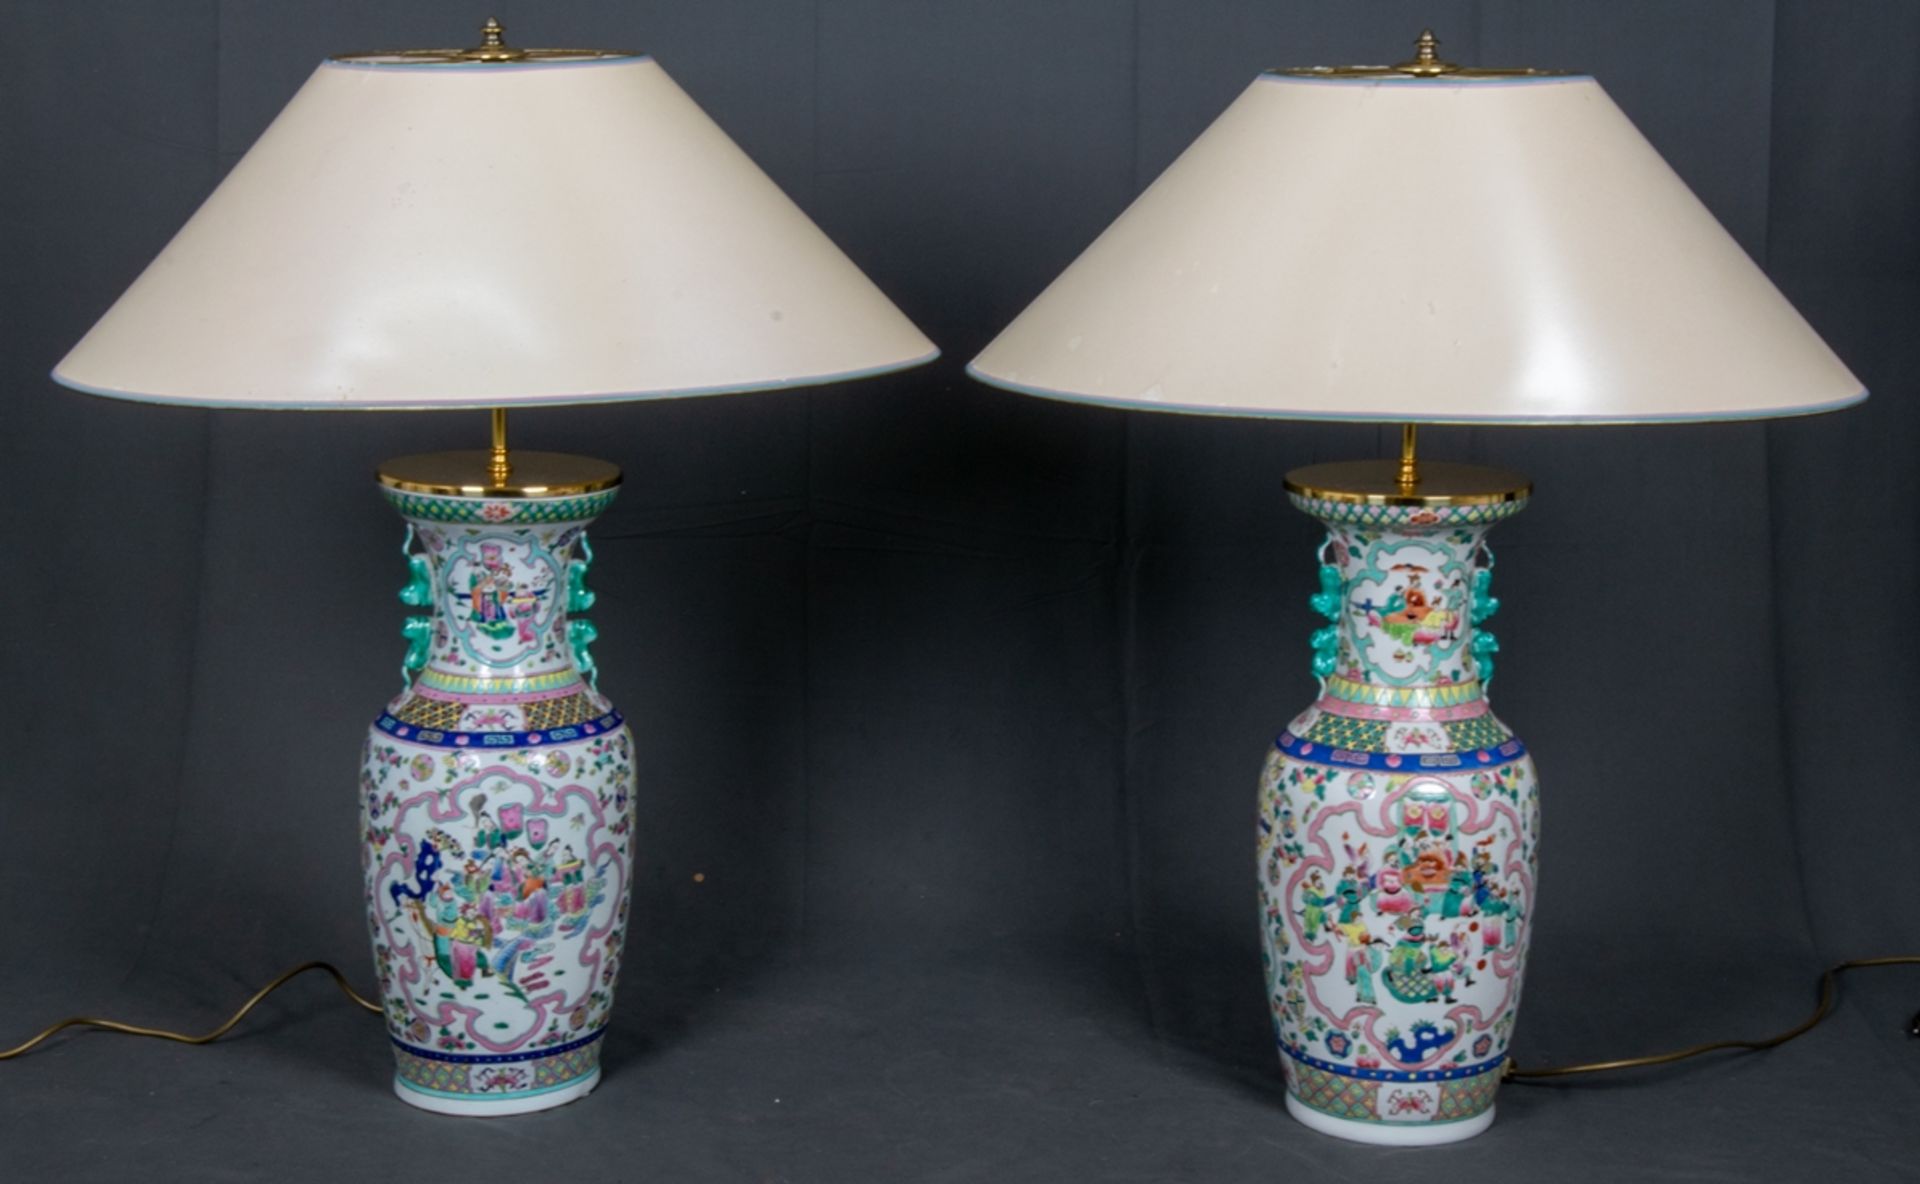 Paar dekorativer Tischlampen, hohe, bauchige Tischvasen, Weißporzellan mit polychromer